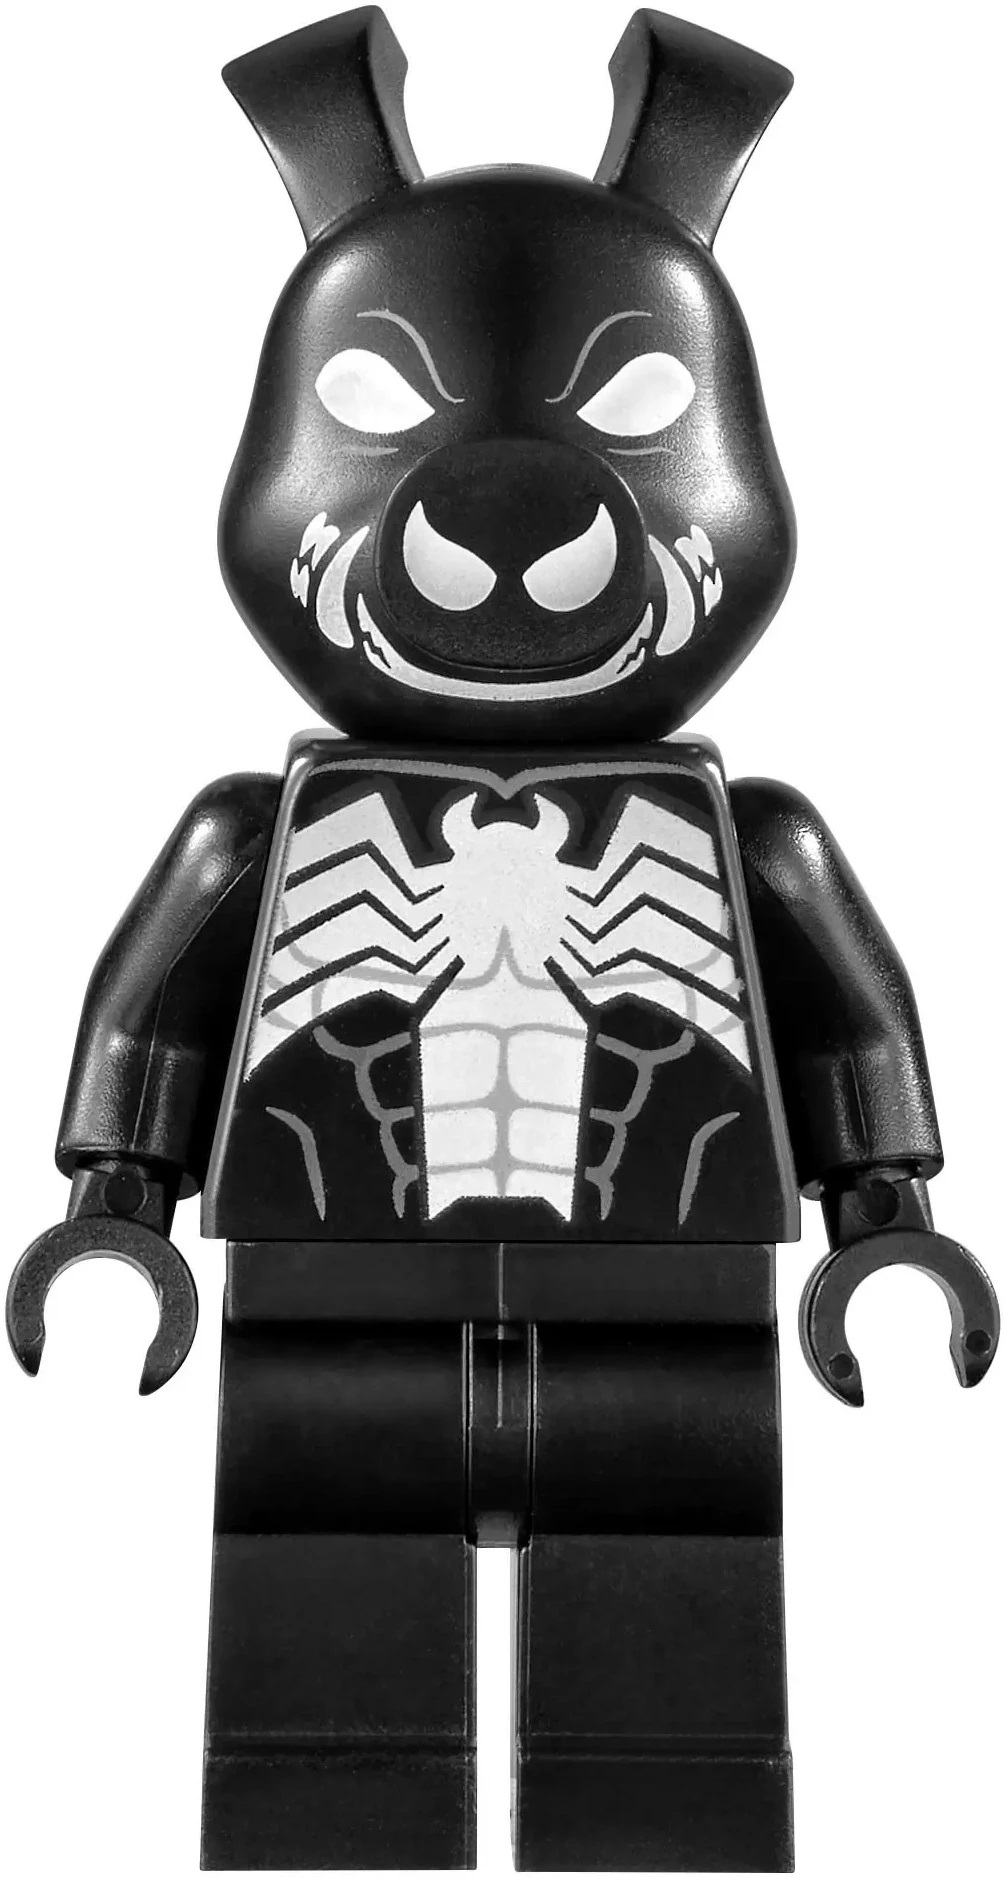 LEGO Marvel Superheroes Pork Grind sh698 Minifigure